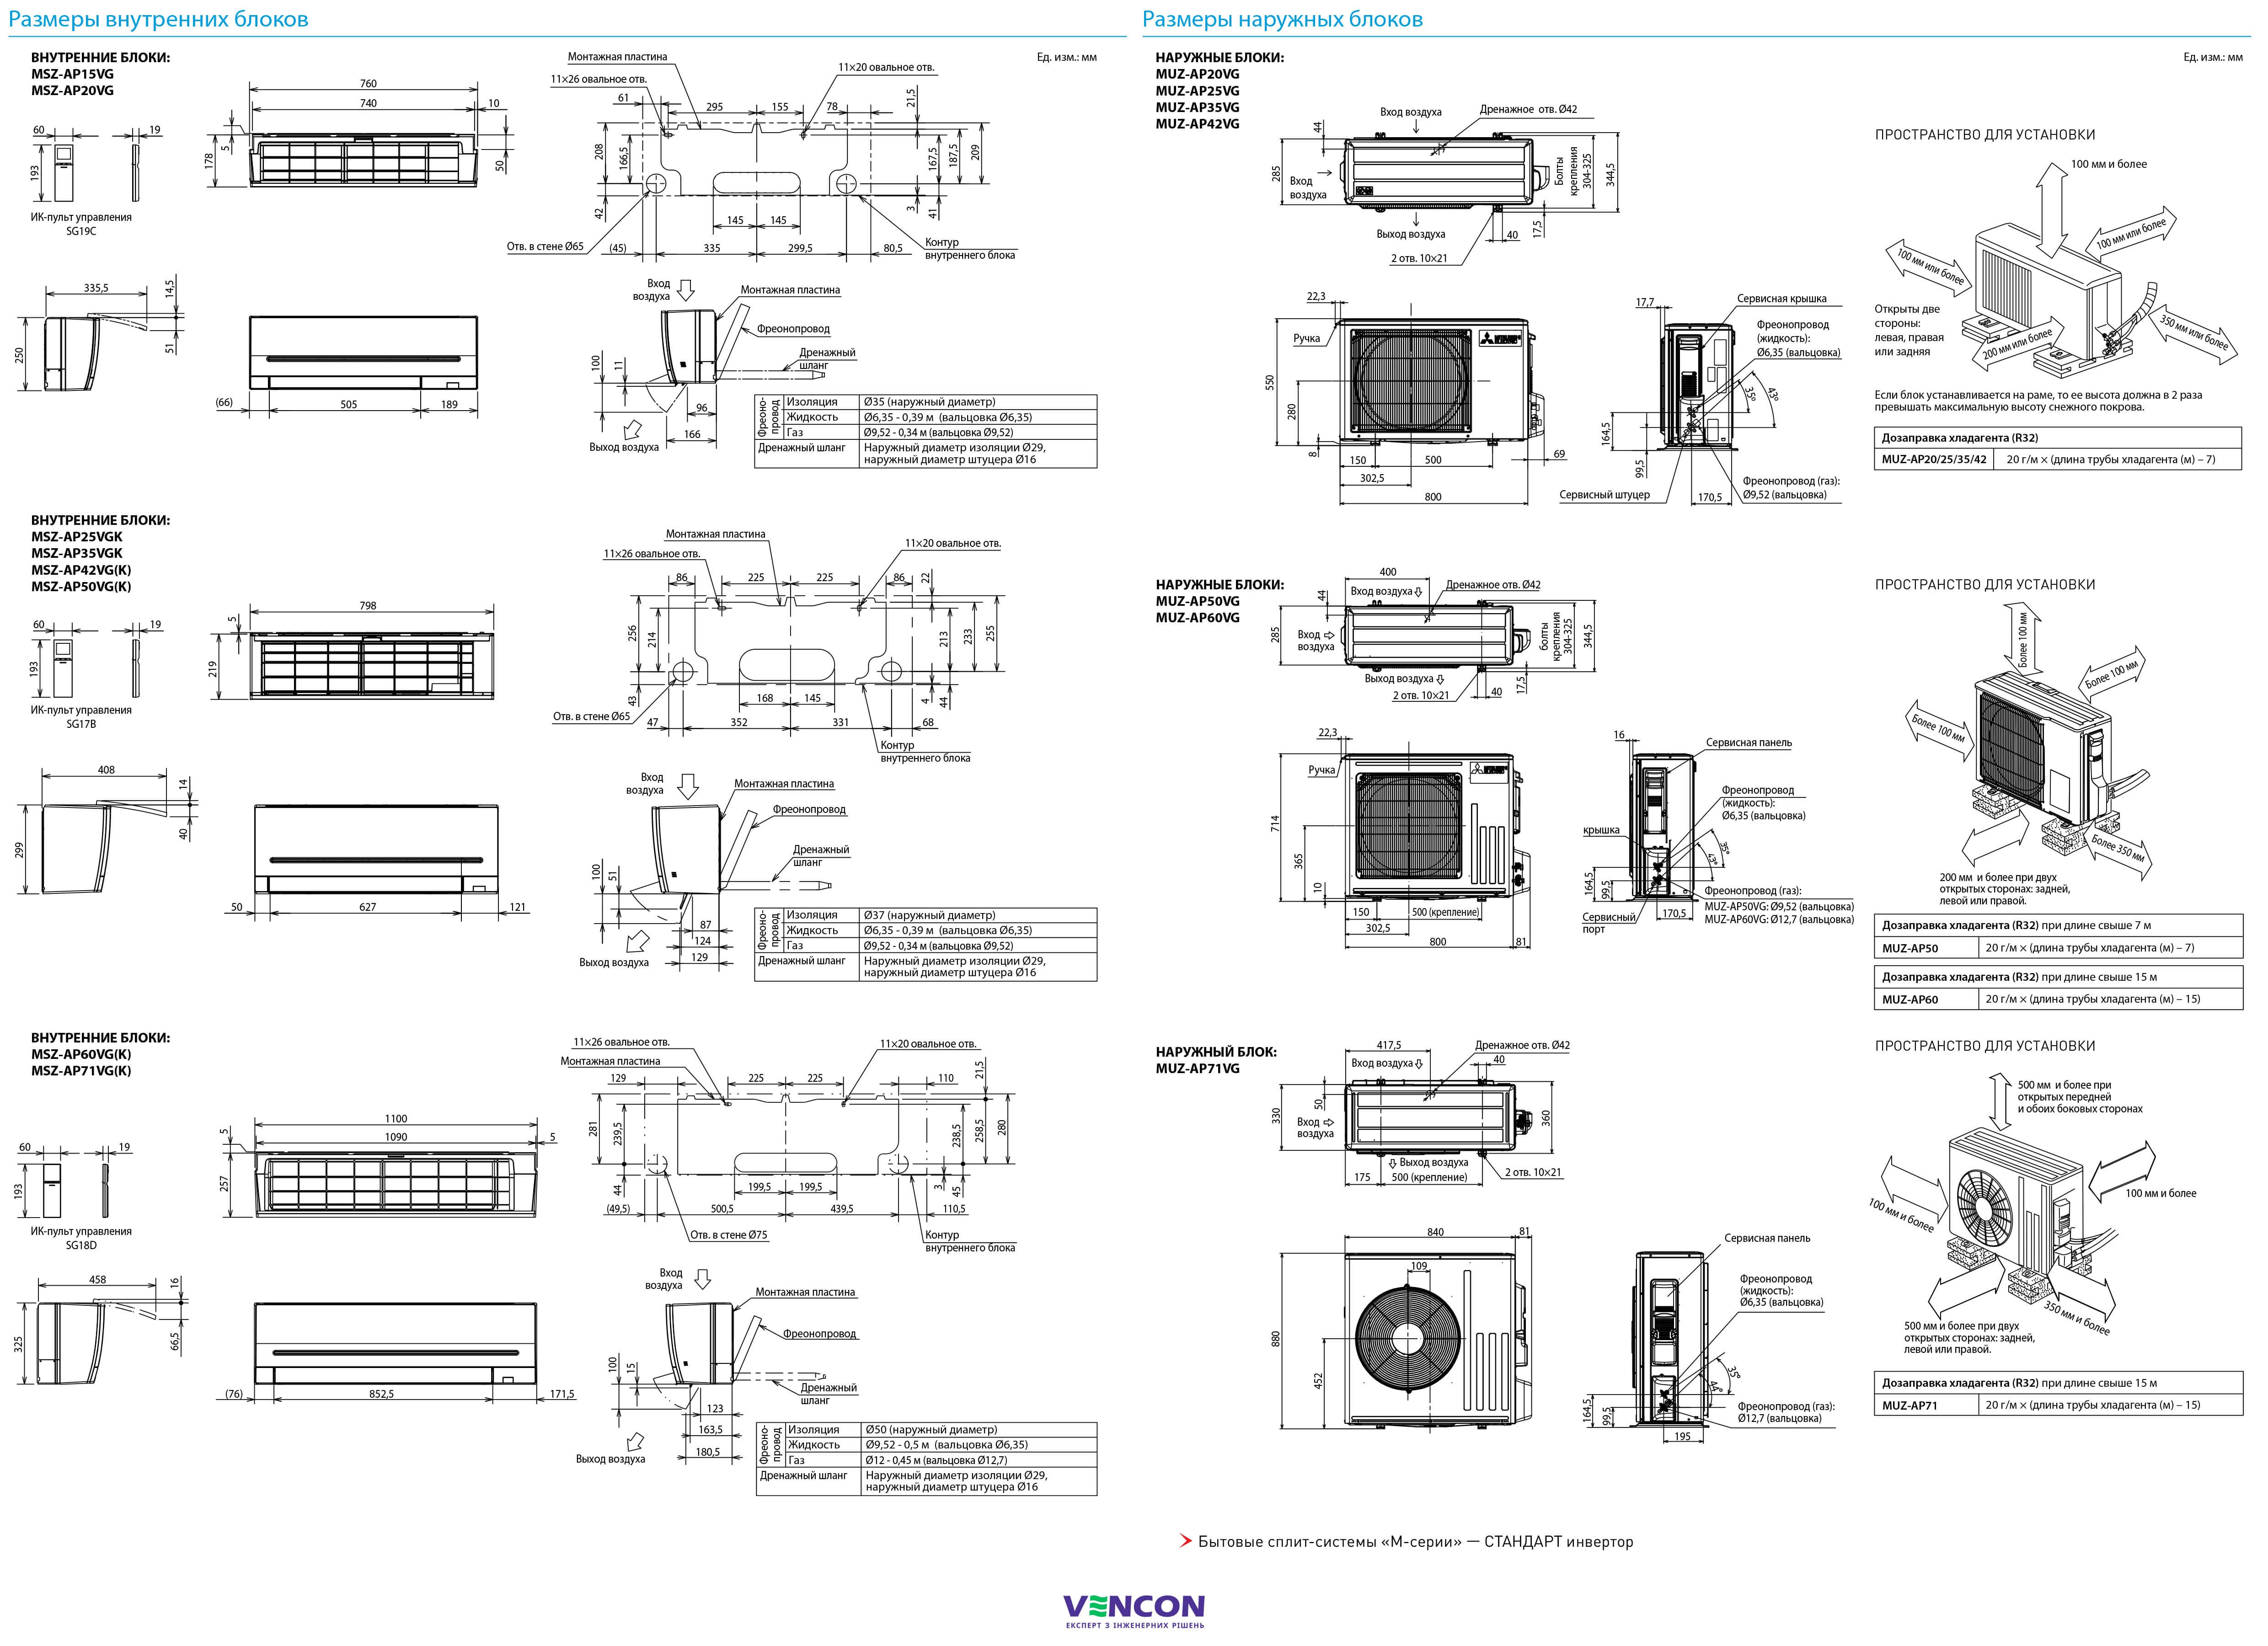 Mitsubishi Electric Standard Inverter MSZ-AP71VGK/MUZ-AP71VG Габаритні розміри